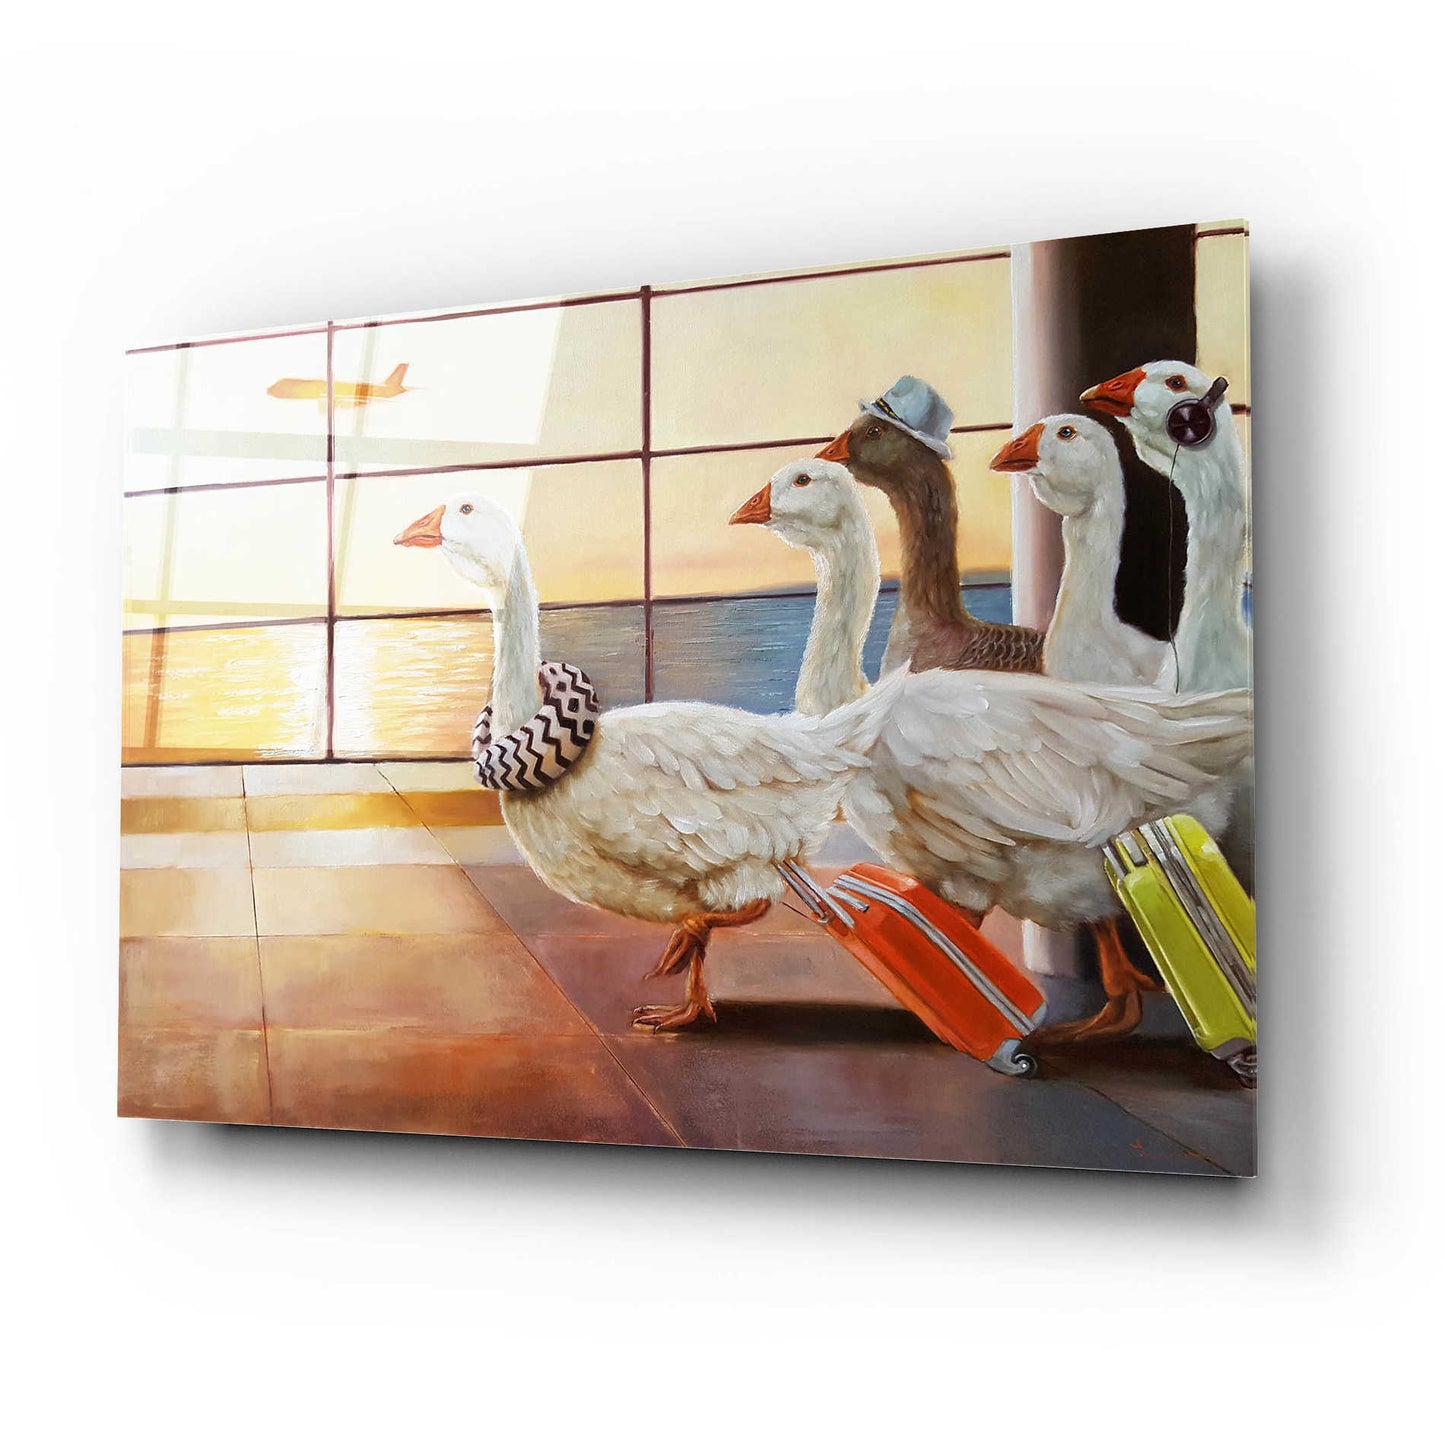 Epic Art 'First Class Migration' by Lucia Heffernan, Acrylic Glass Wall Art,24x16